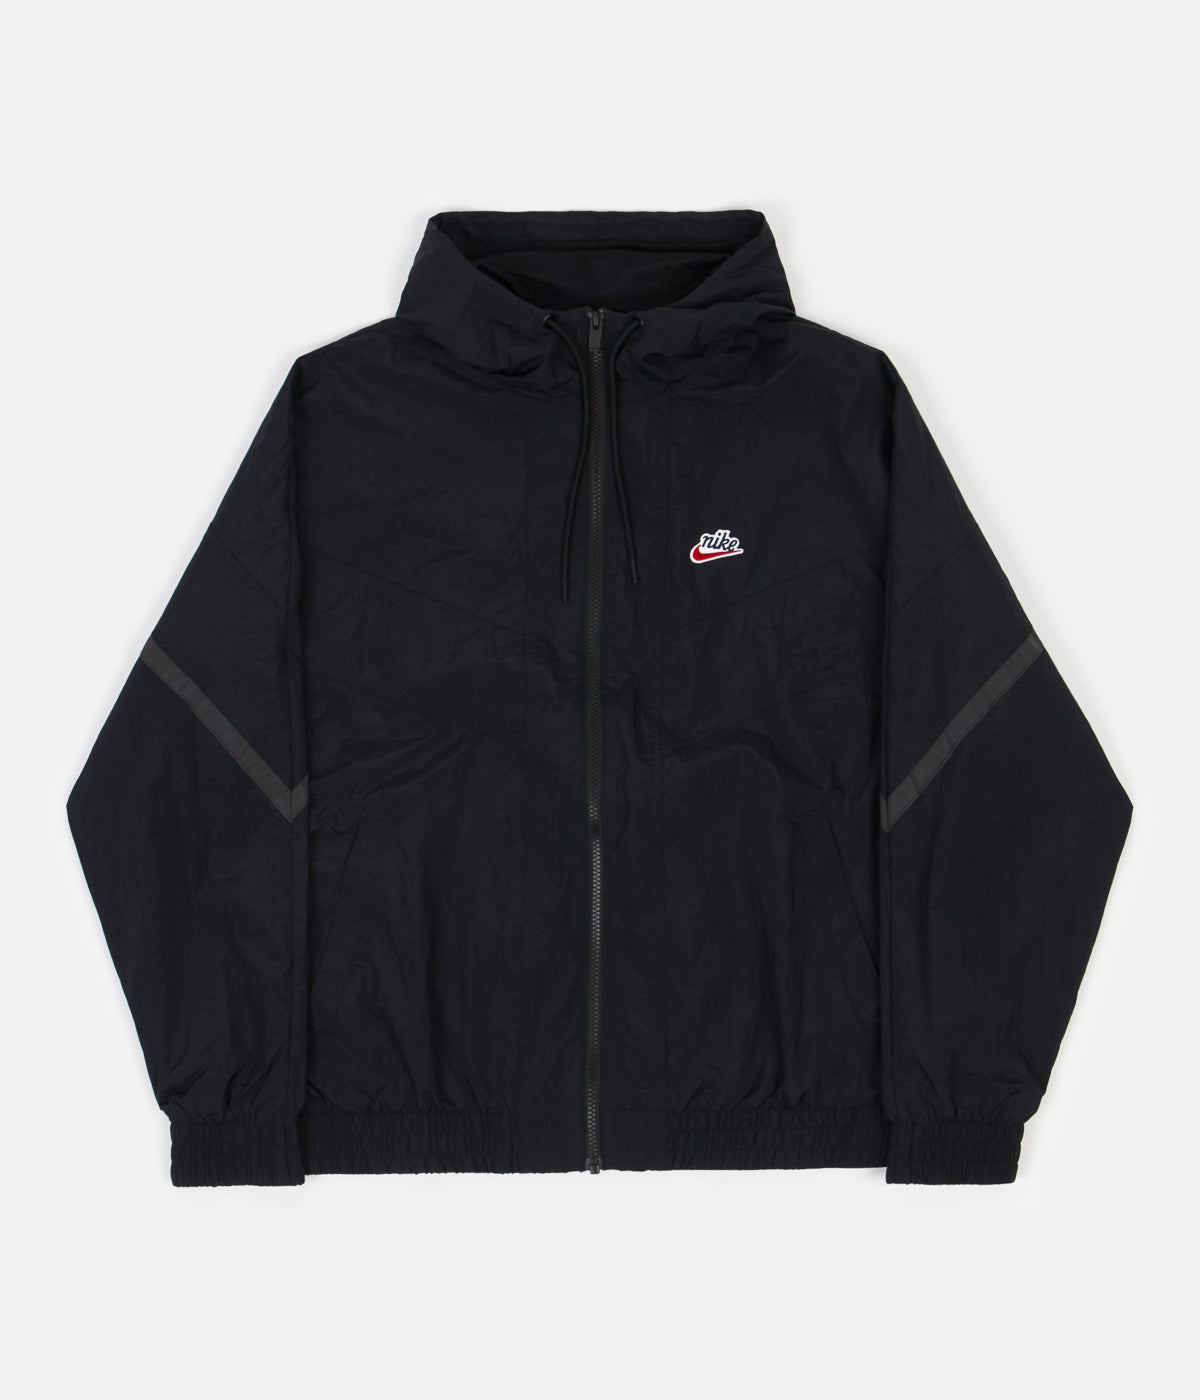 black windrunner jacket